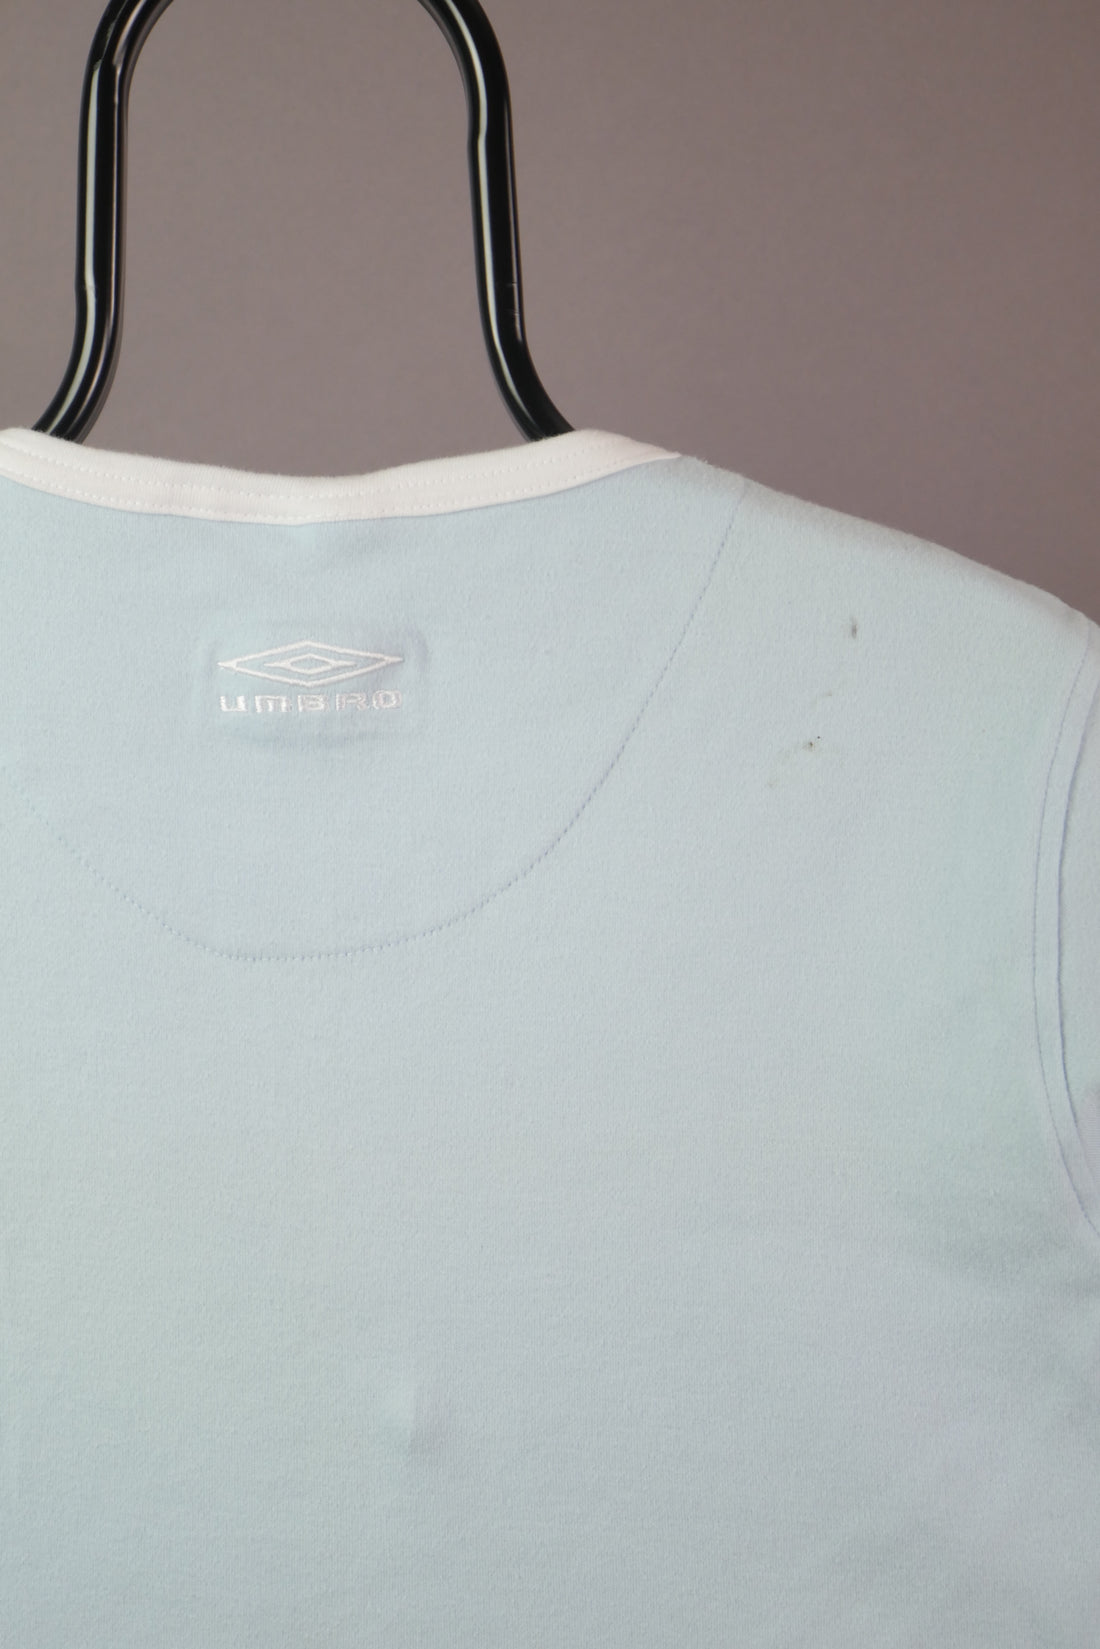 The Umbro Baby Ringer T-Shirt (UK16)